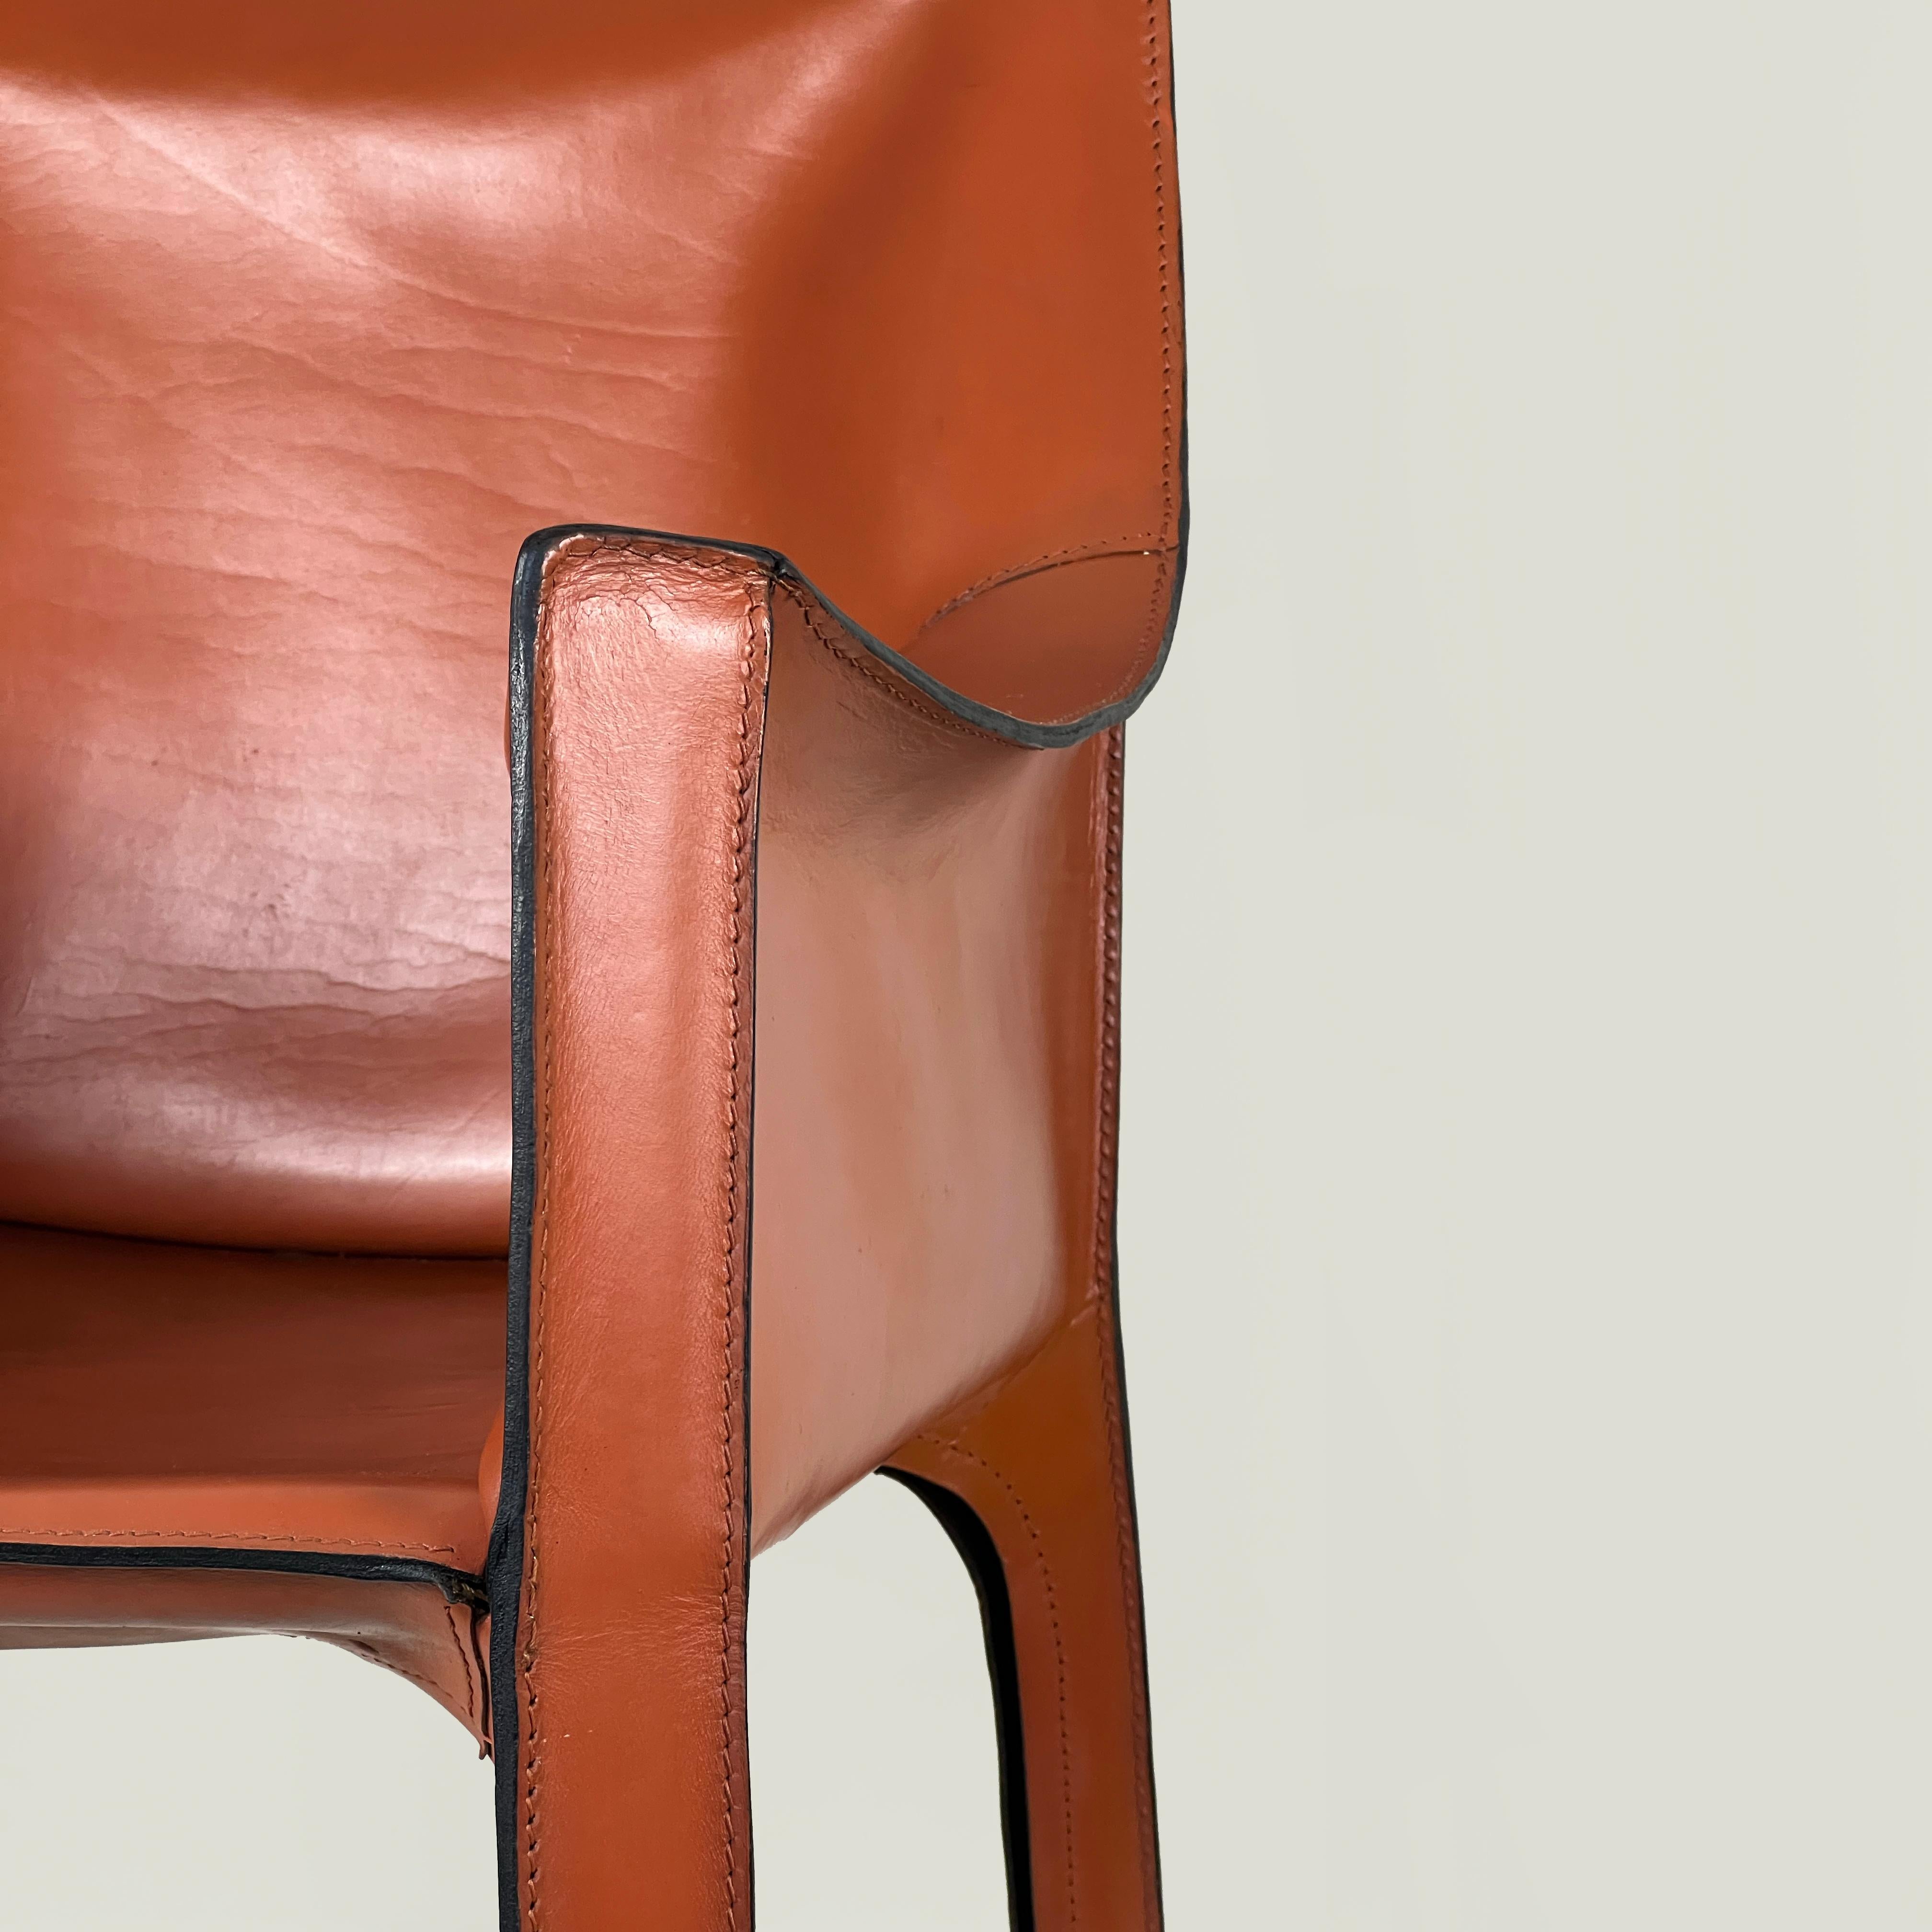 Cognacfarbener Ledersessel CAB 413 von Mario Bellini für Cassina, Italien 1970er Jahre

Der Stuhl Cab 413 ist die bahnbrechende Realisierung des weltweit ersten Stuhls mit einer selbsttragenden Lederstruktur. Das Leder wird auf den Metallrahmen